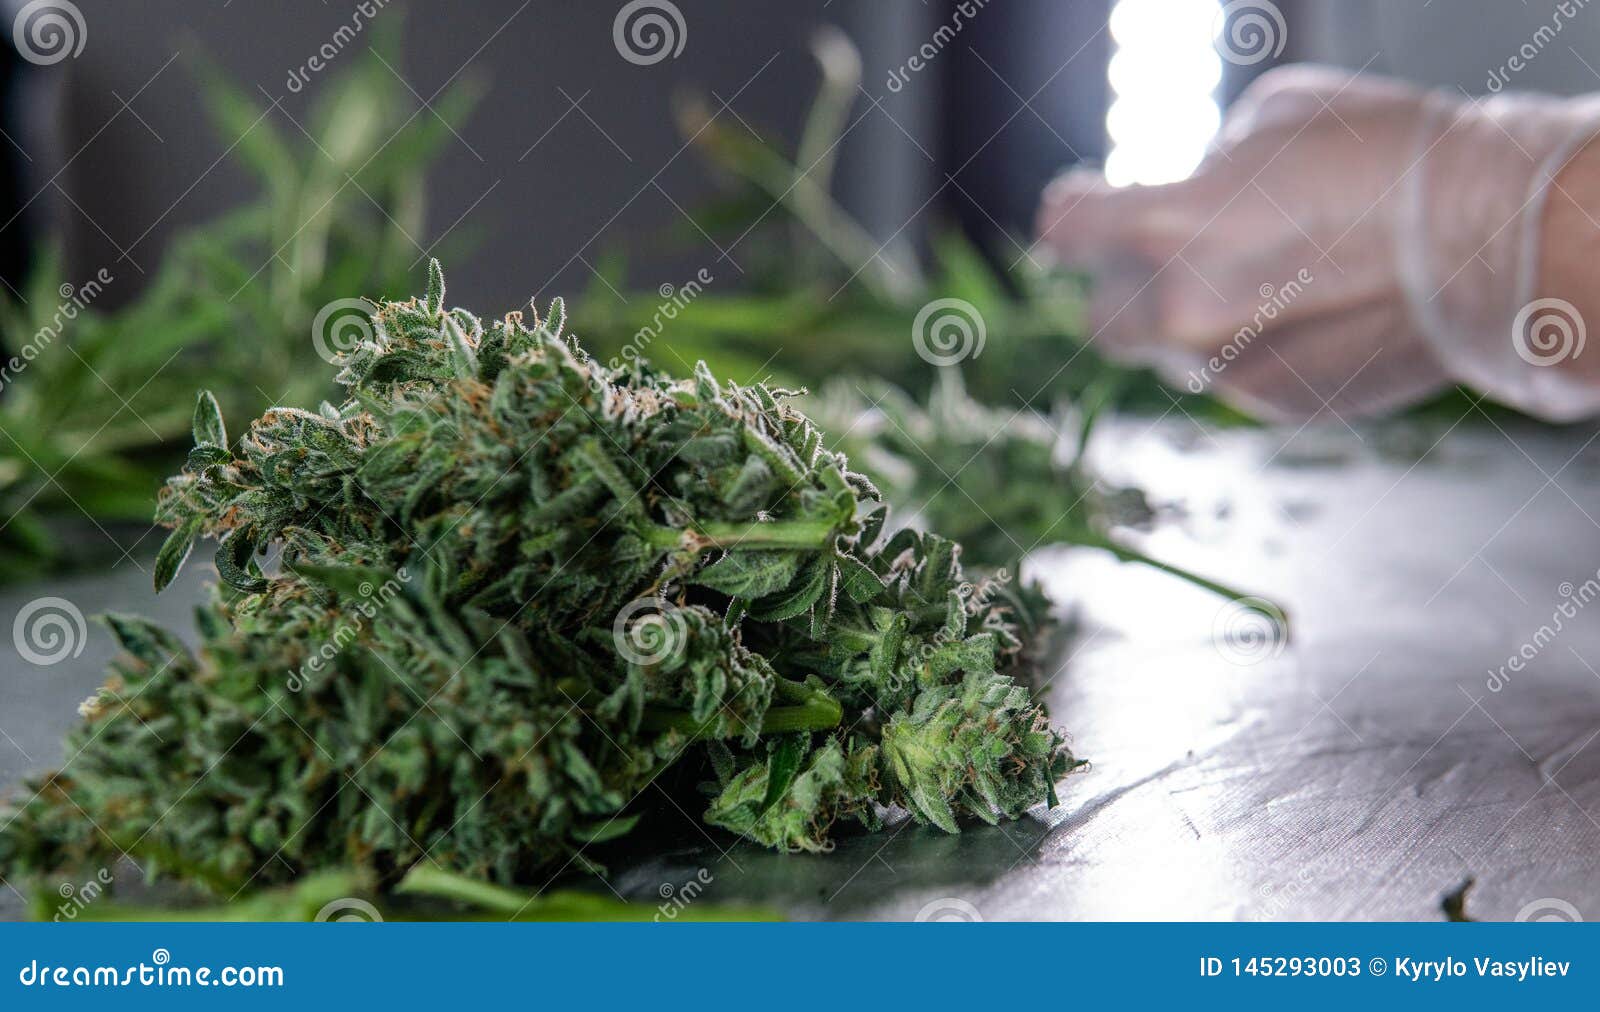 Обработка конопли фото период выявления марихуаны